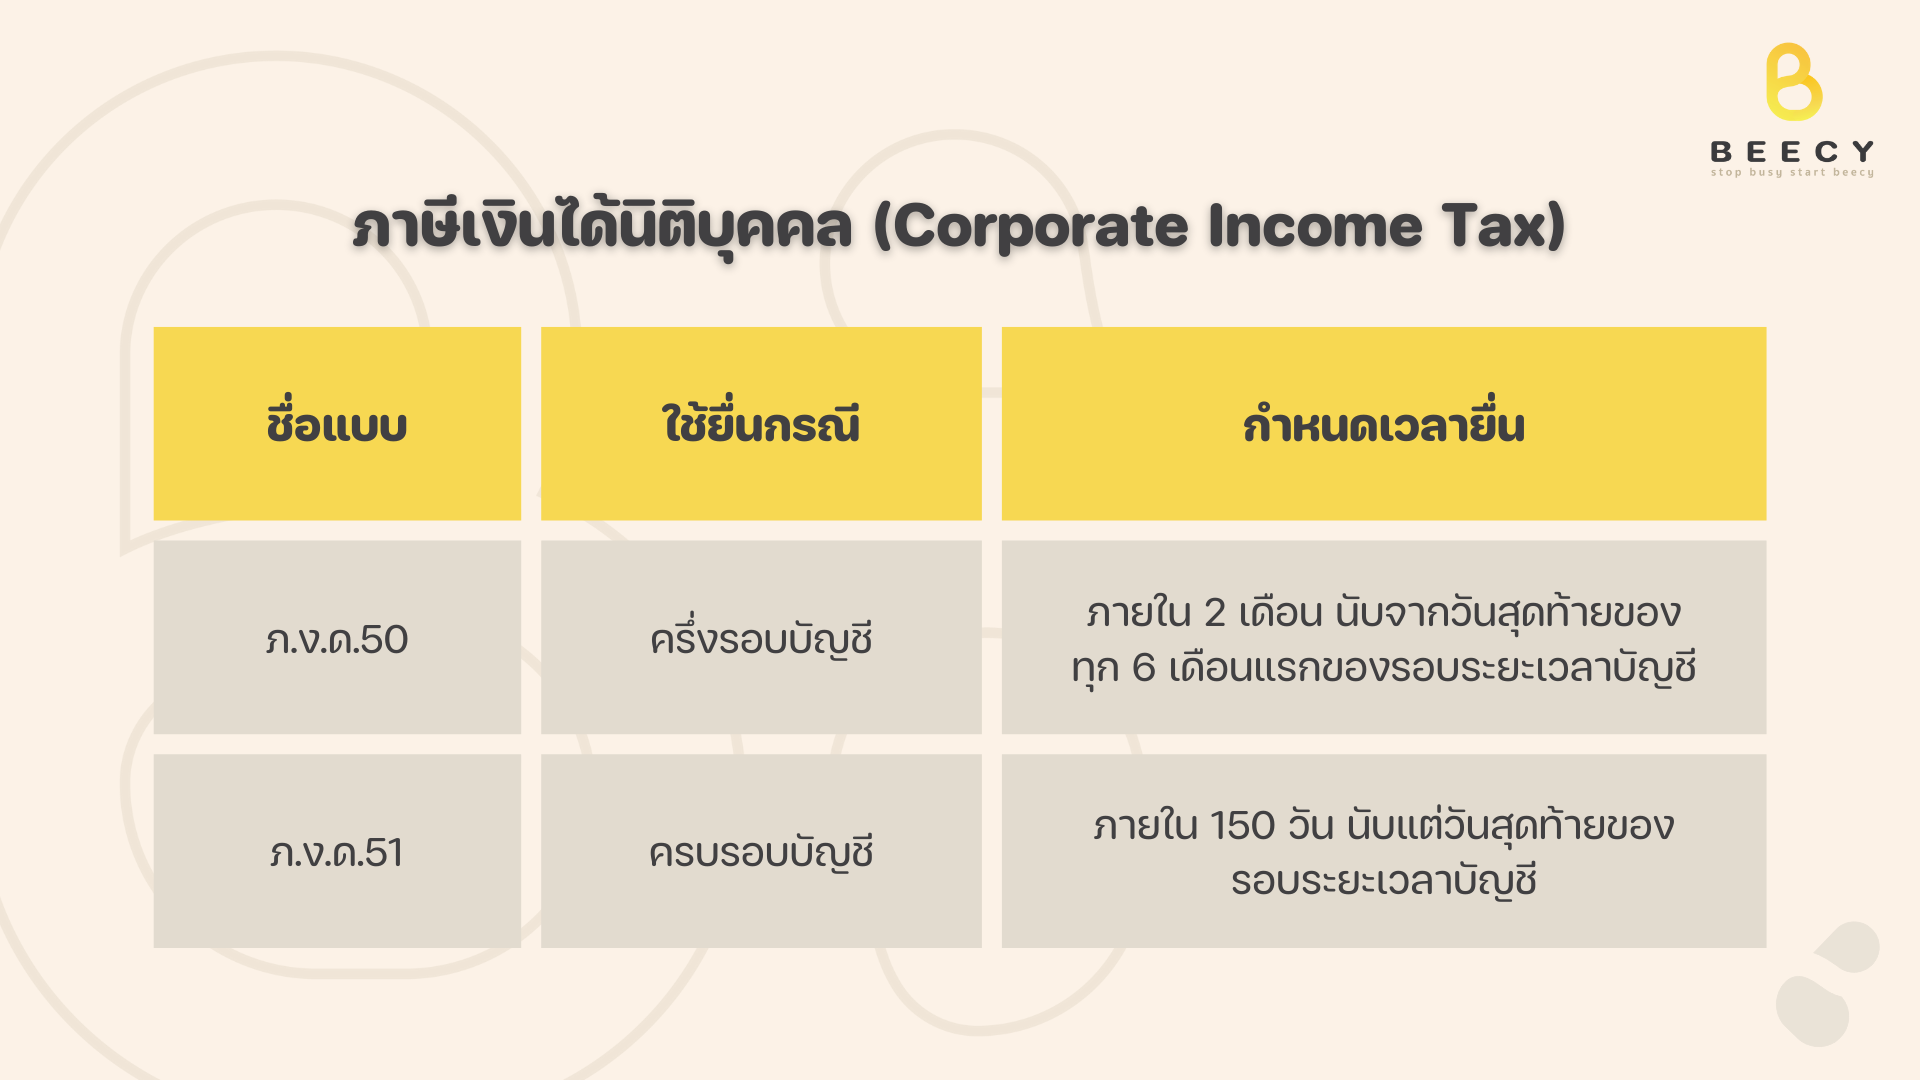 ภาษี (Tax) ทั้ง 7 ประเภท ที่เจ้าของกิจการควรรู้